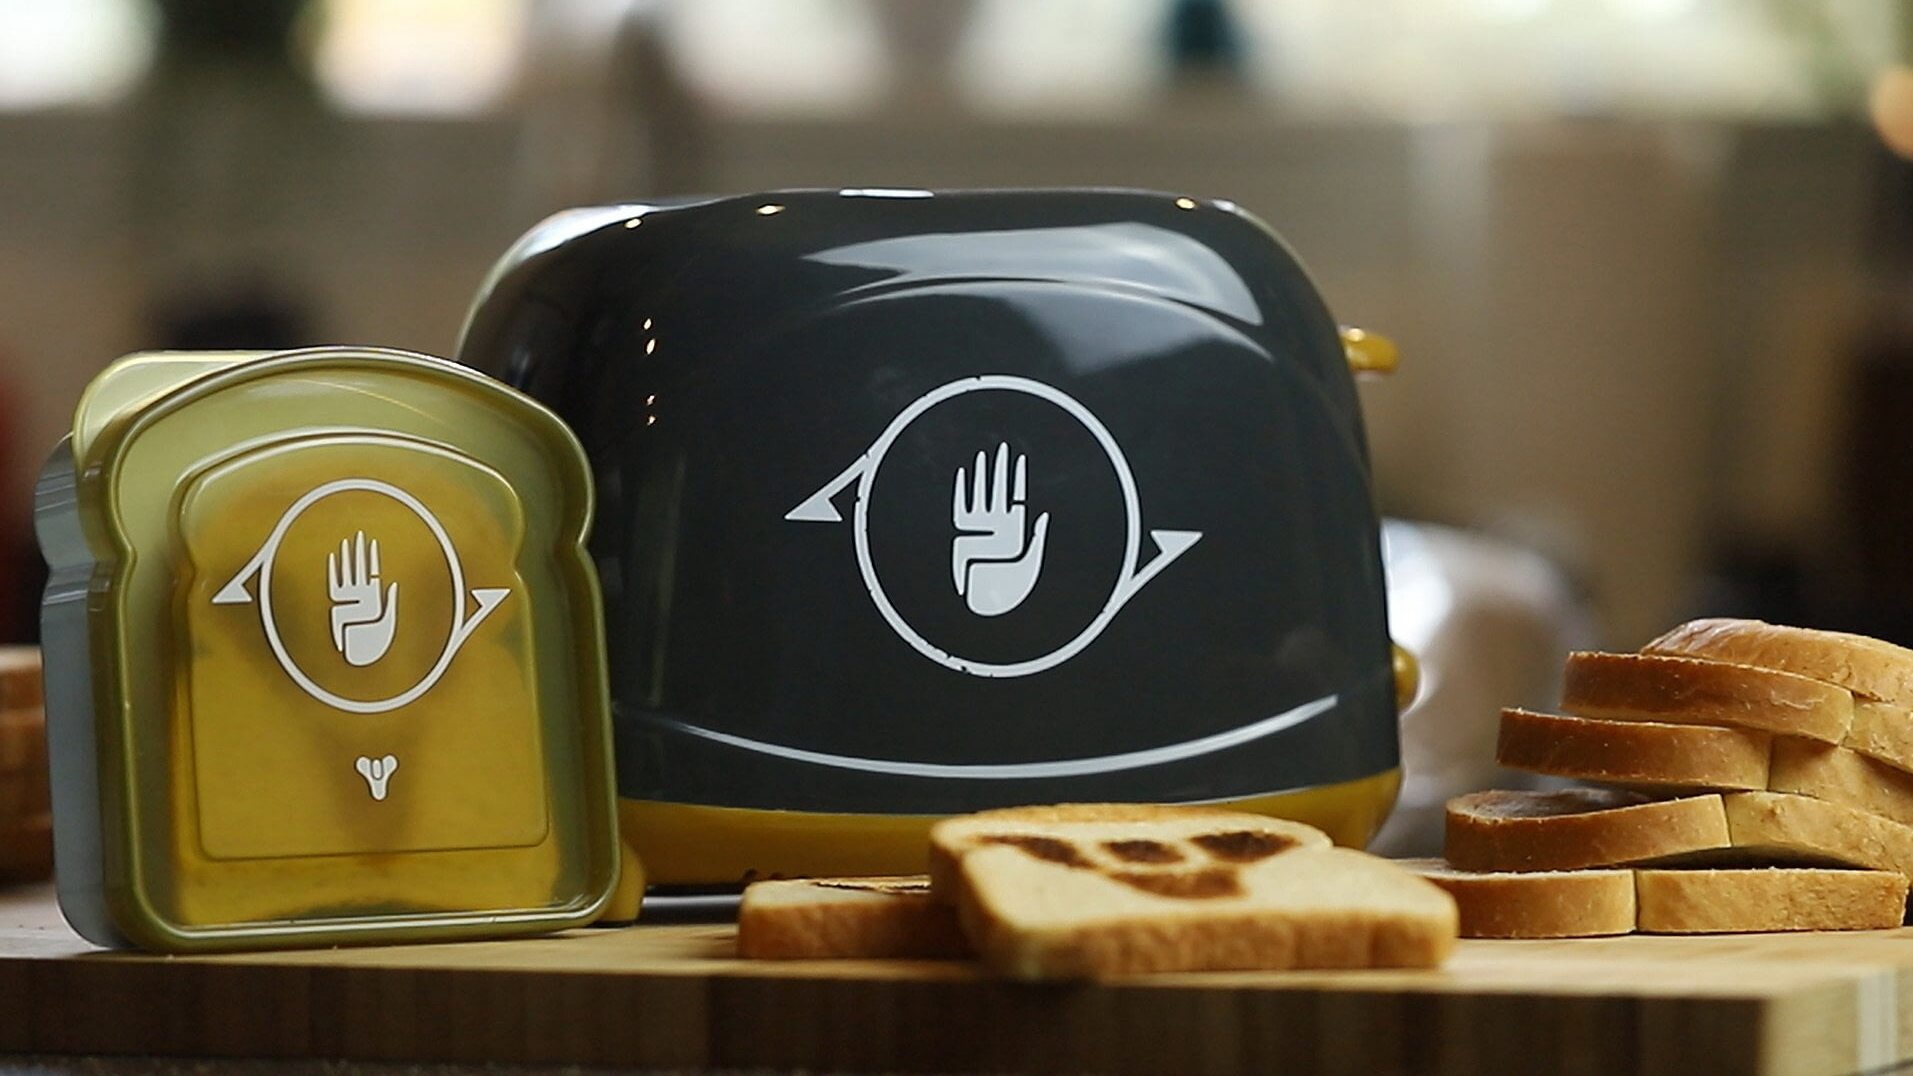 Студия Bungie выпустила тостер, который оставляет на хлебе логотип Destiny